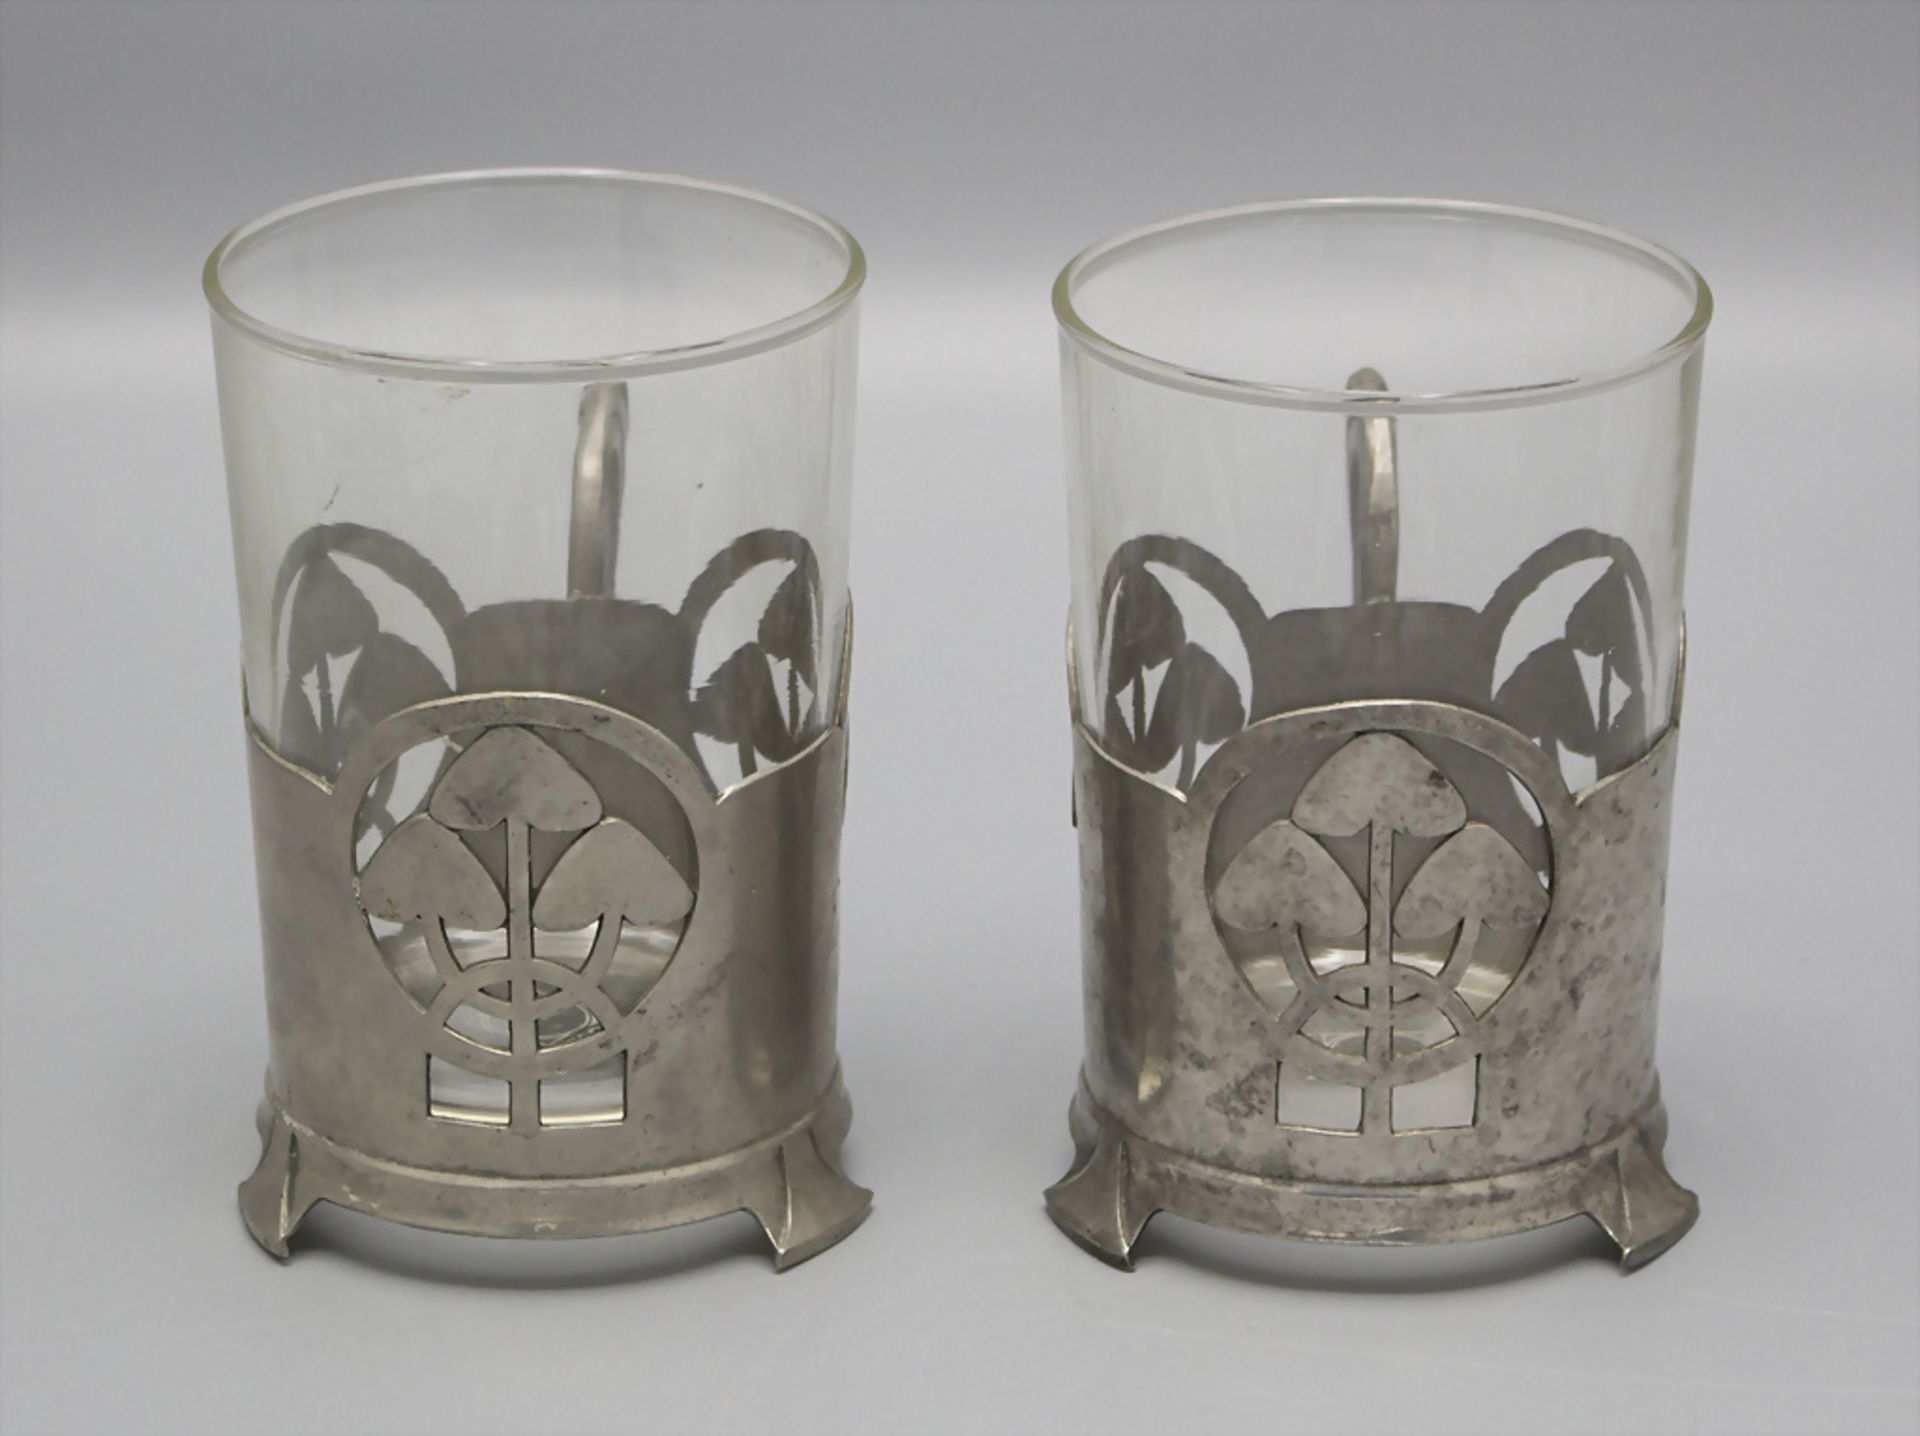 Paar Jugendstil Teeglashalter mit Pilzen / Two Art Nouveau tea glass holder with mushrooms, ... - Image 2 of 3